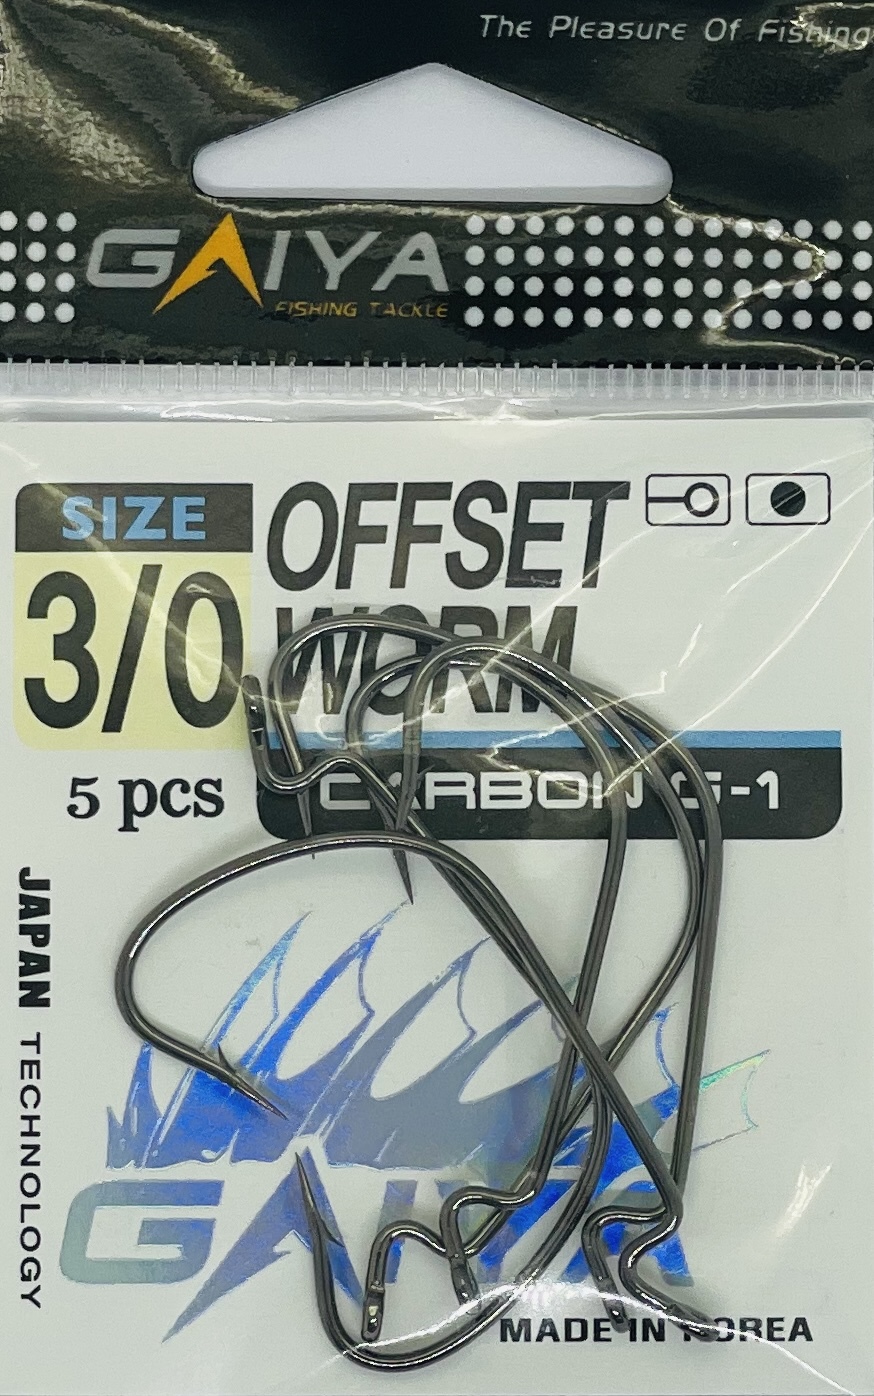 Крючки оффсетные OFFSET WORM, размер 3/0, 5 шт.